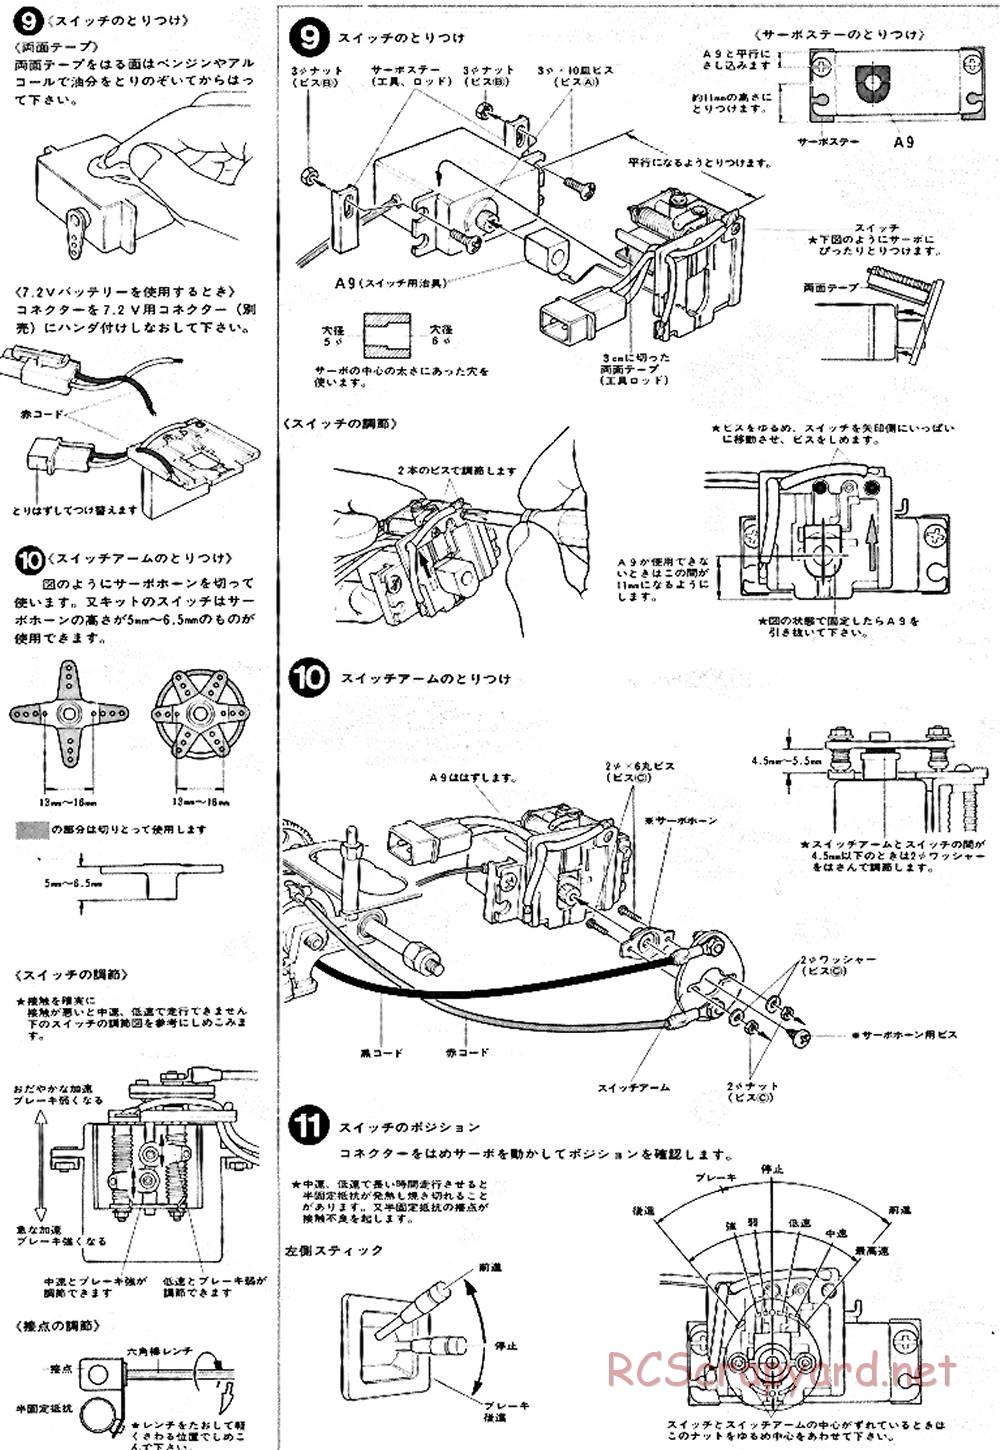 Tamiya - Ford C100 - RM MK.4 - 58033 - Manual - Page 6